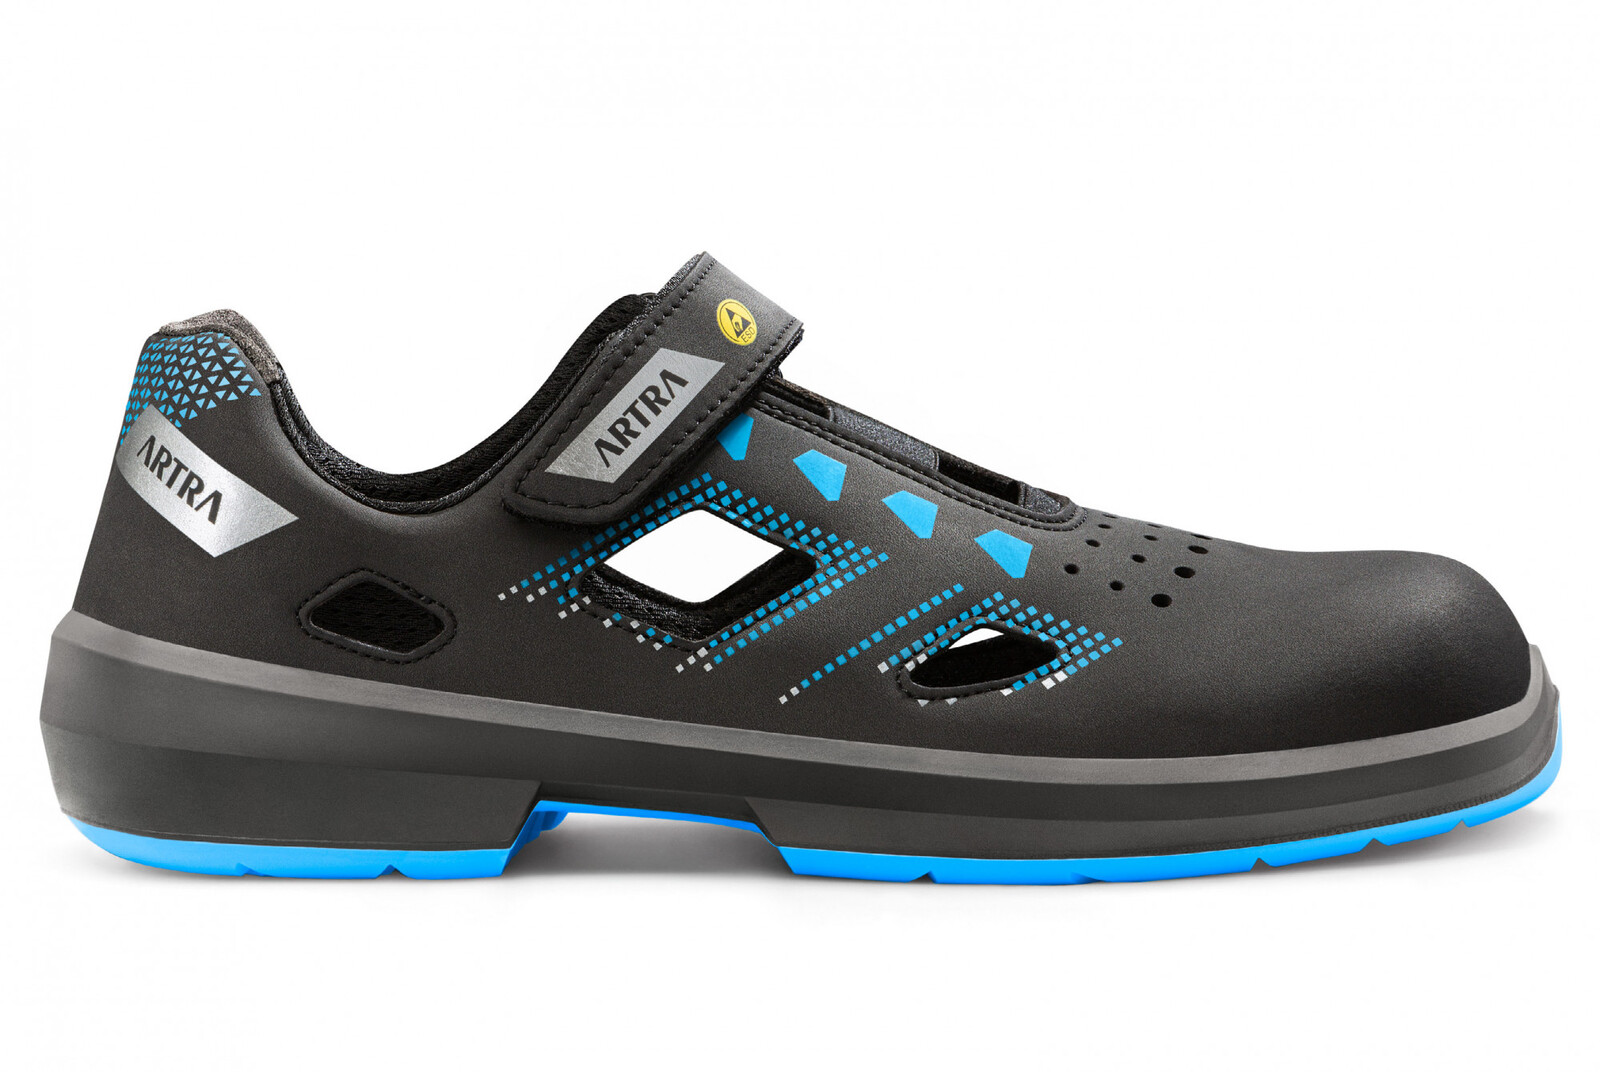 Bezpečnostné sandále Artra Arzo 805 619090 S1P SRC ESD MF - veľkosť: 42, farba: čierna/modrá